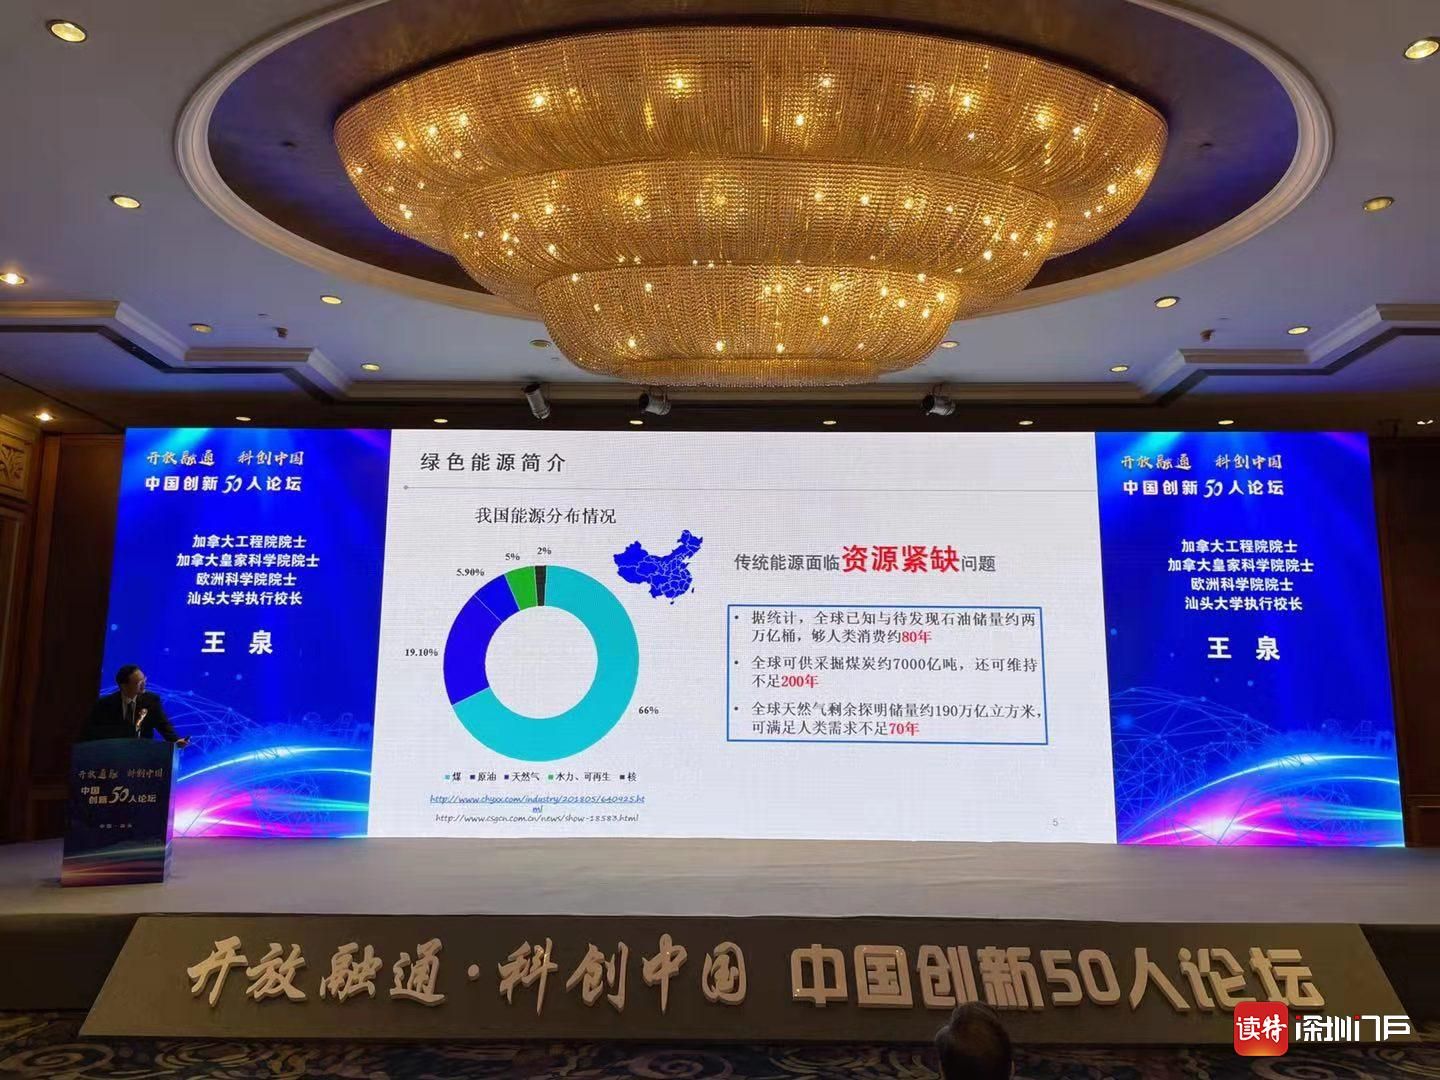 “中国创新50人论坛”在汕头举行 在更高水平上推进创新融通和开放发展